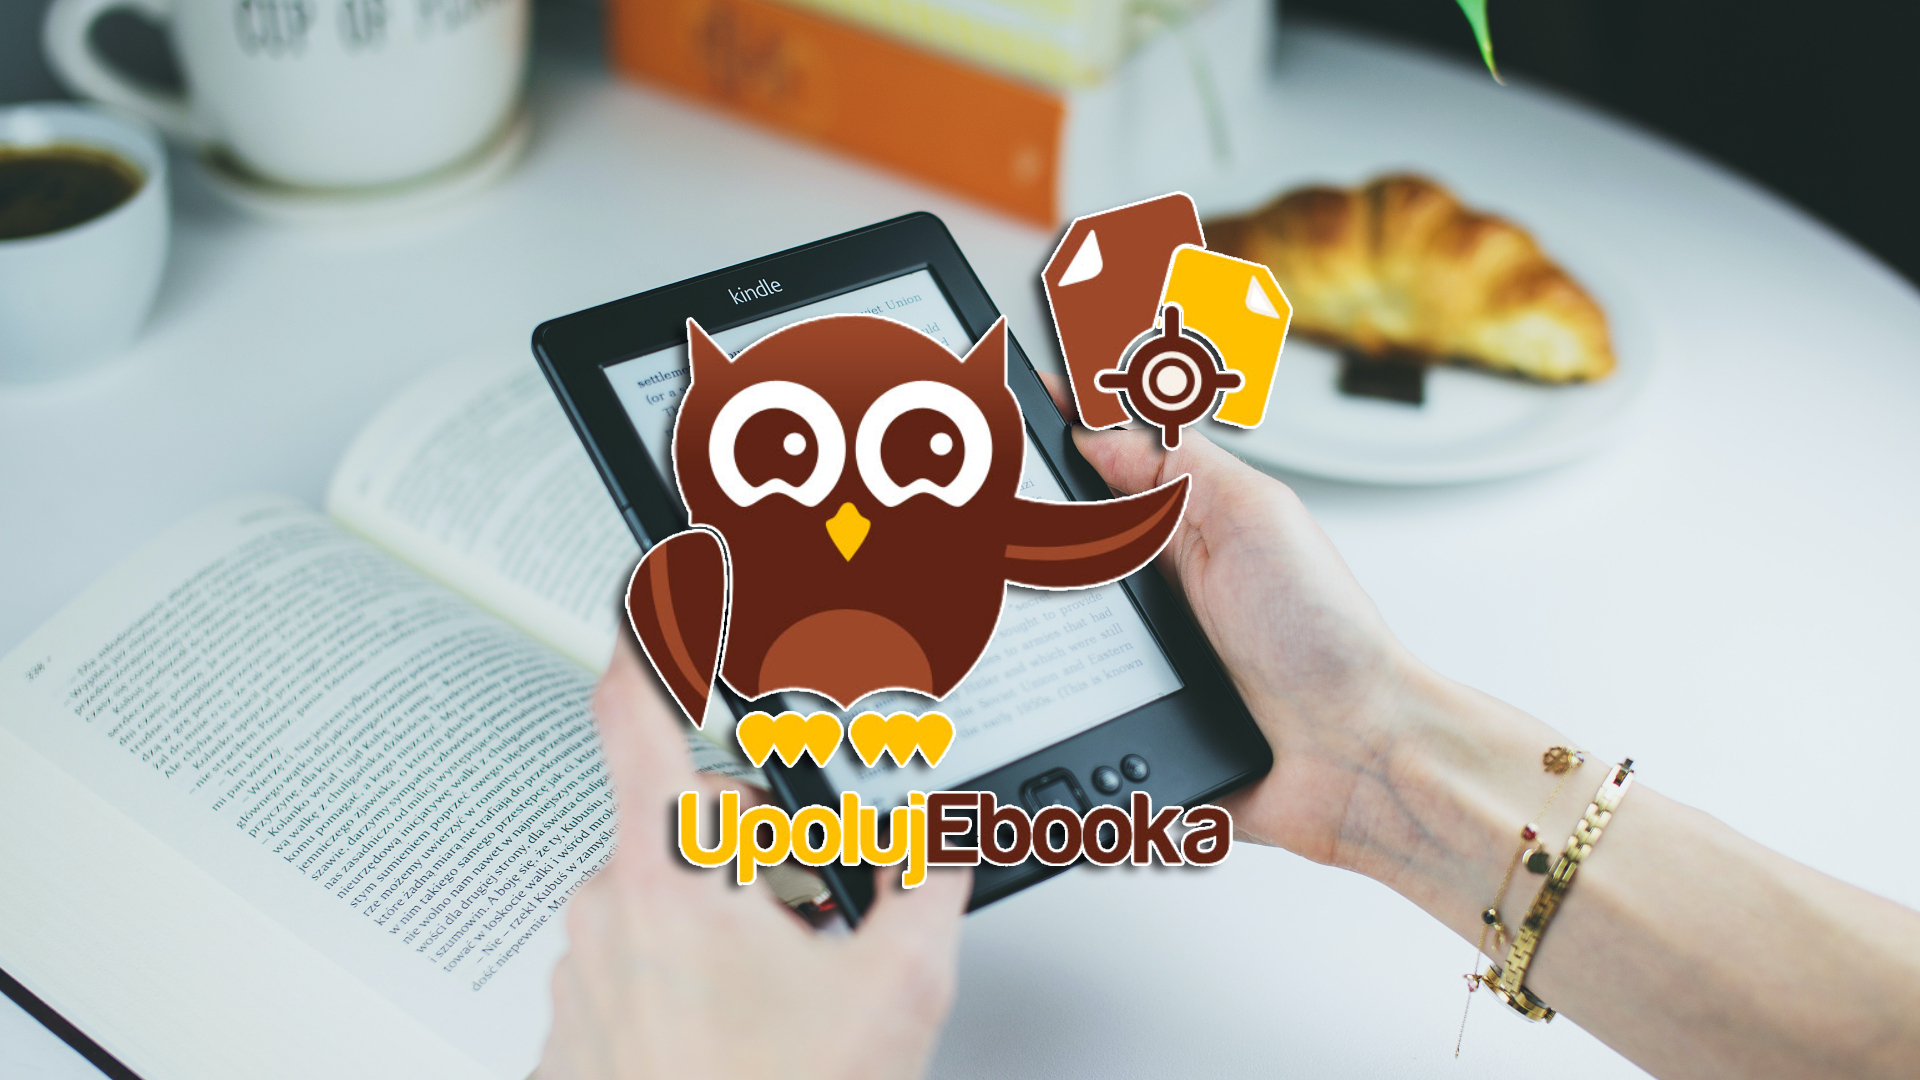 UpolujEbooka - porównywarka ebooków